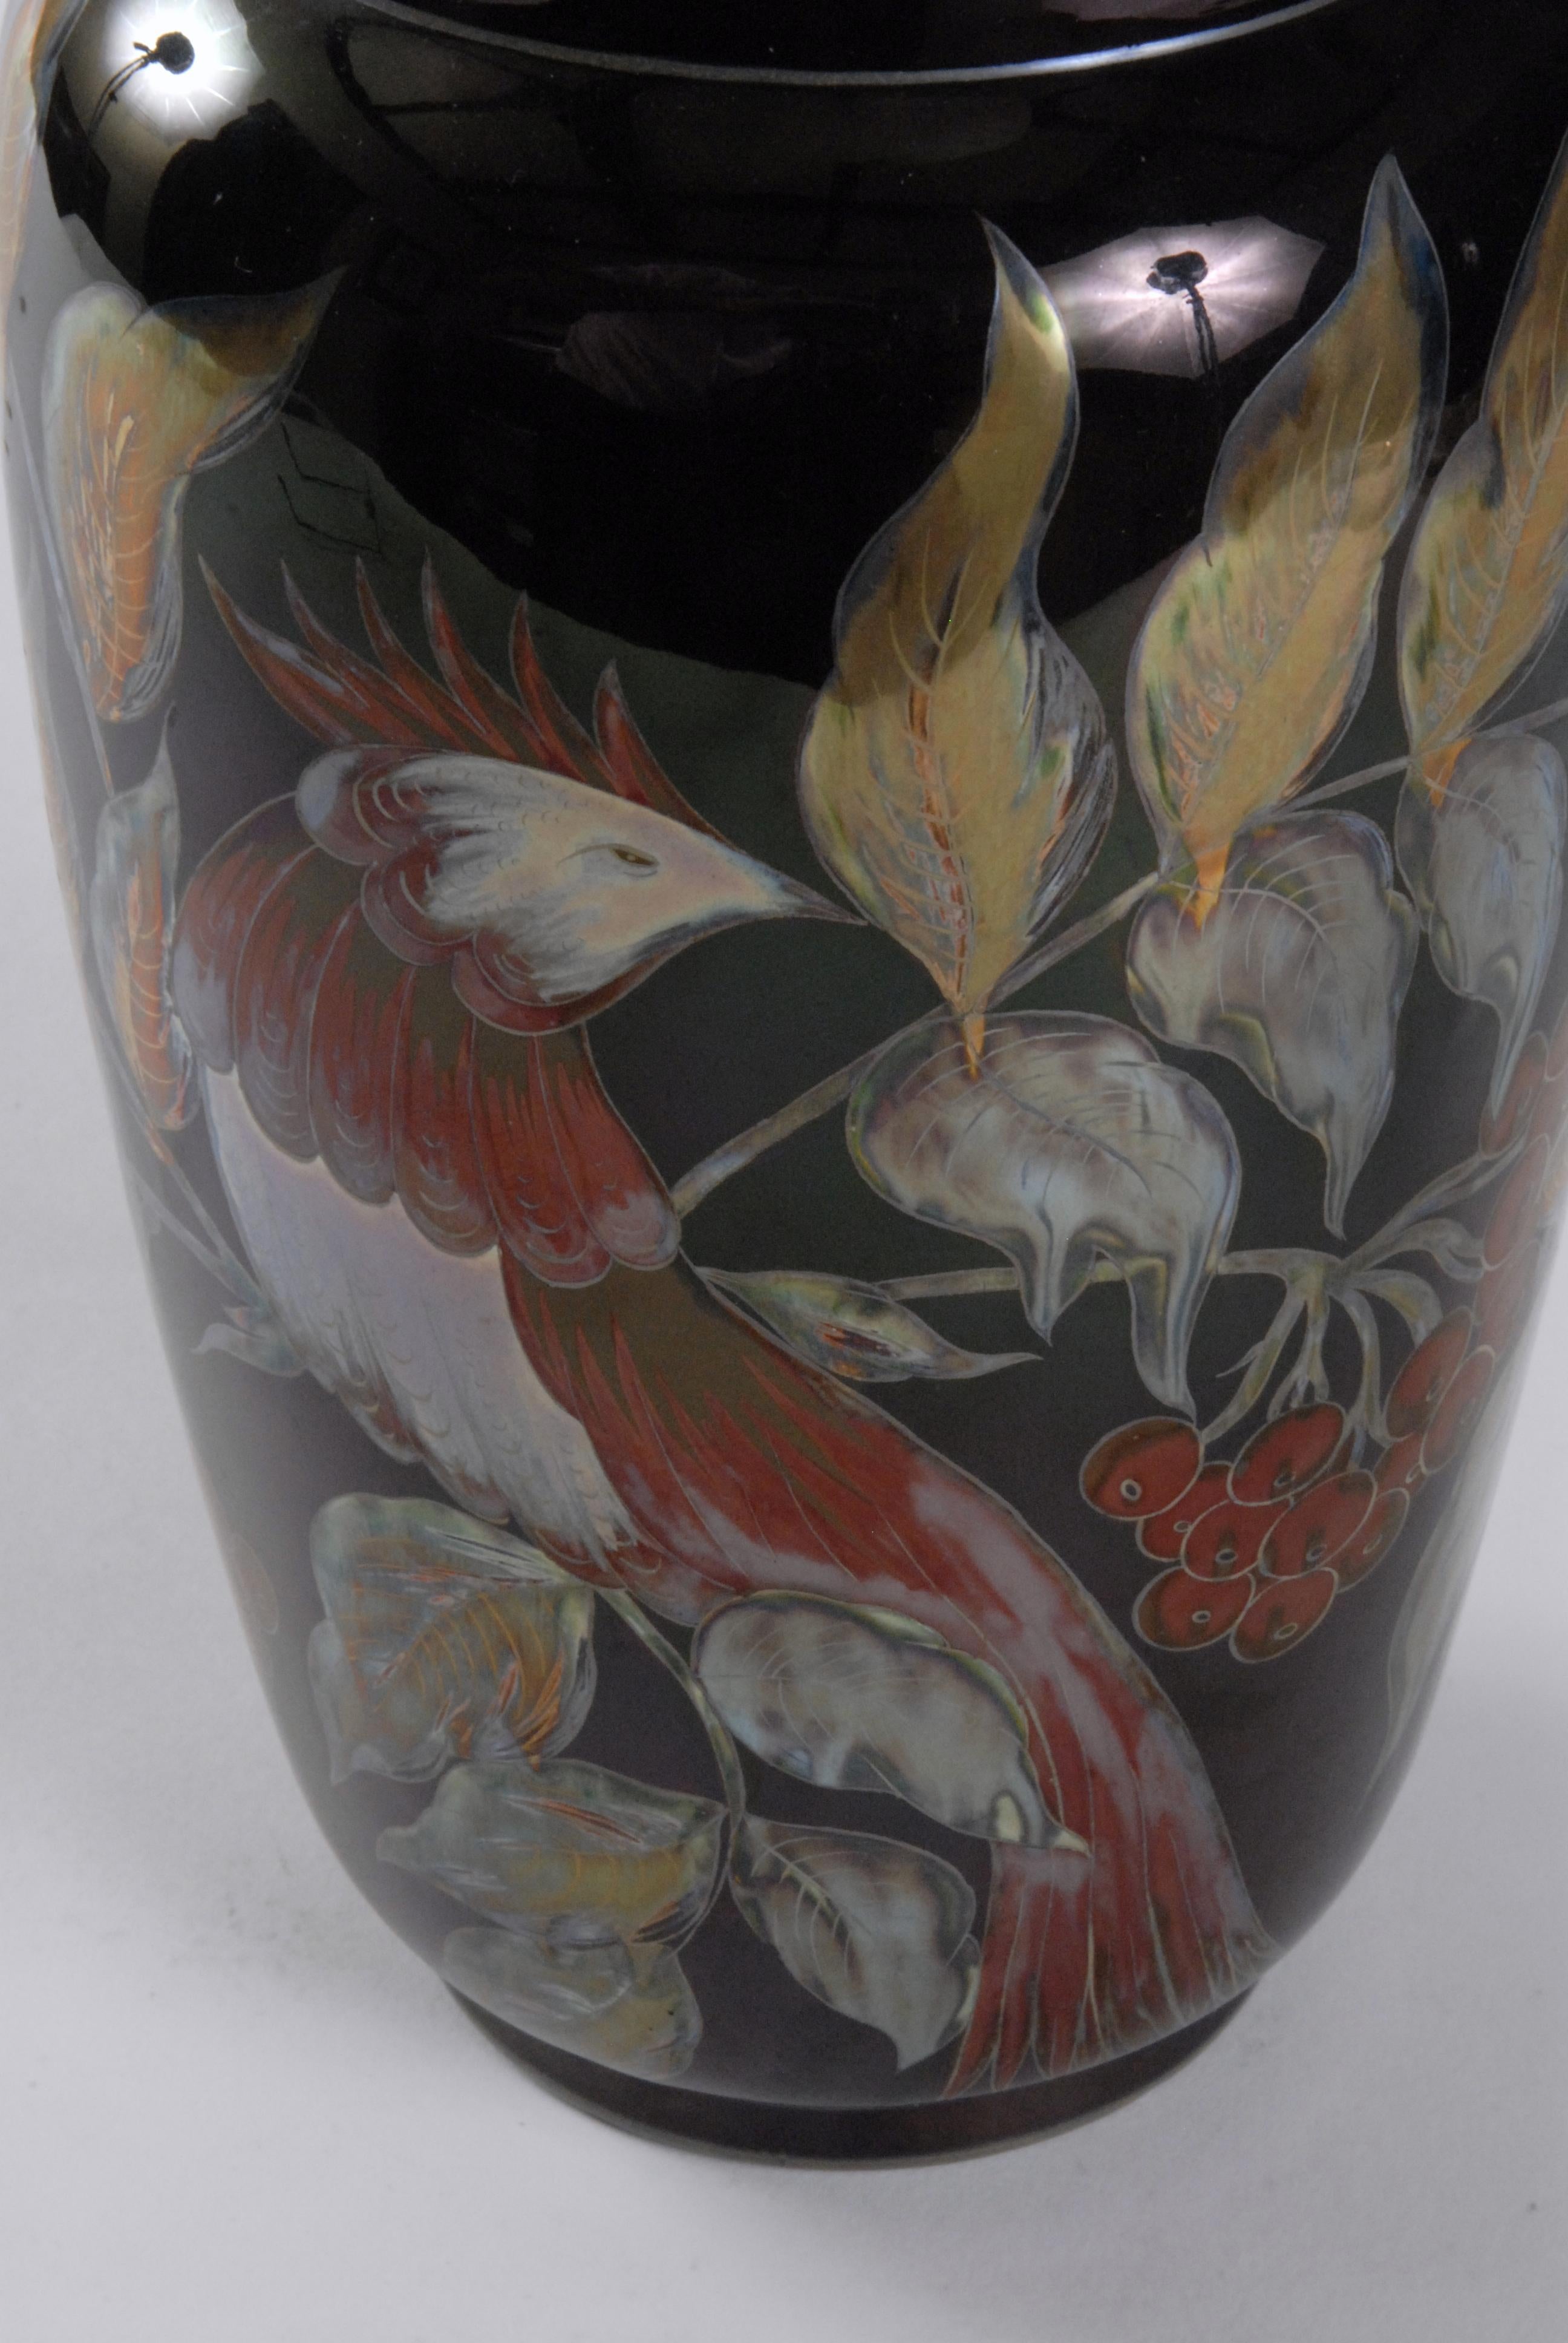 Un magnifique vase en glaçure Eosin de Zsolnay, peint à la main, avec des oiseaux sur des tiges et des feuilles fruitées. Entièrement marqué sur la base. Superbe qualité de cette célèbre usine hongroise.